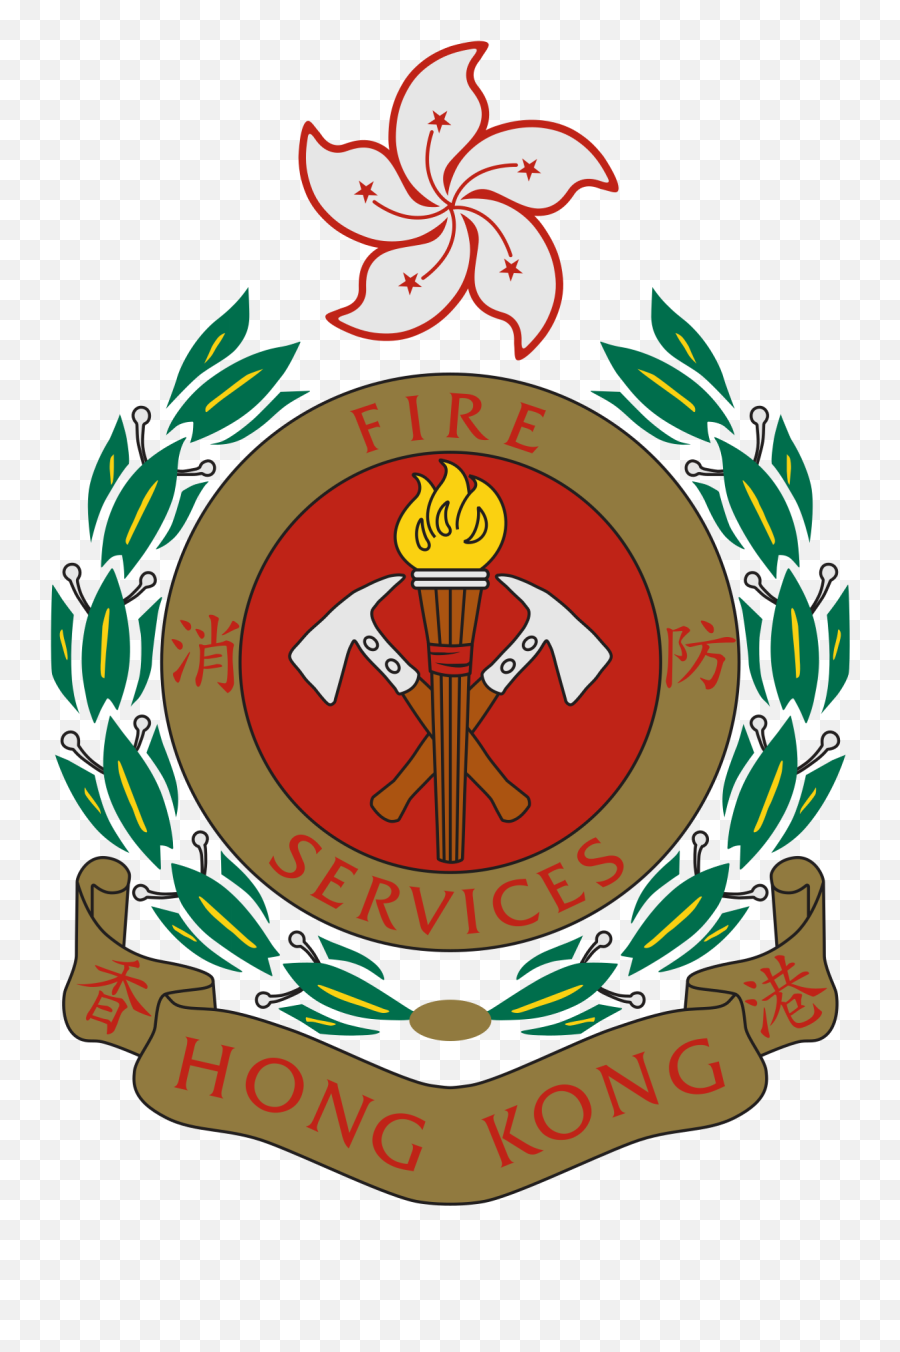 Hong Kong Fire Services Department - Fire Services Department Logo Png,Hotel Icon Hong Kong Entrance